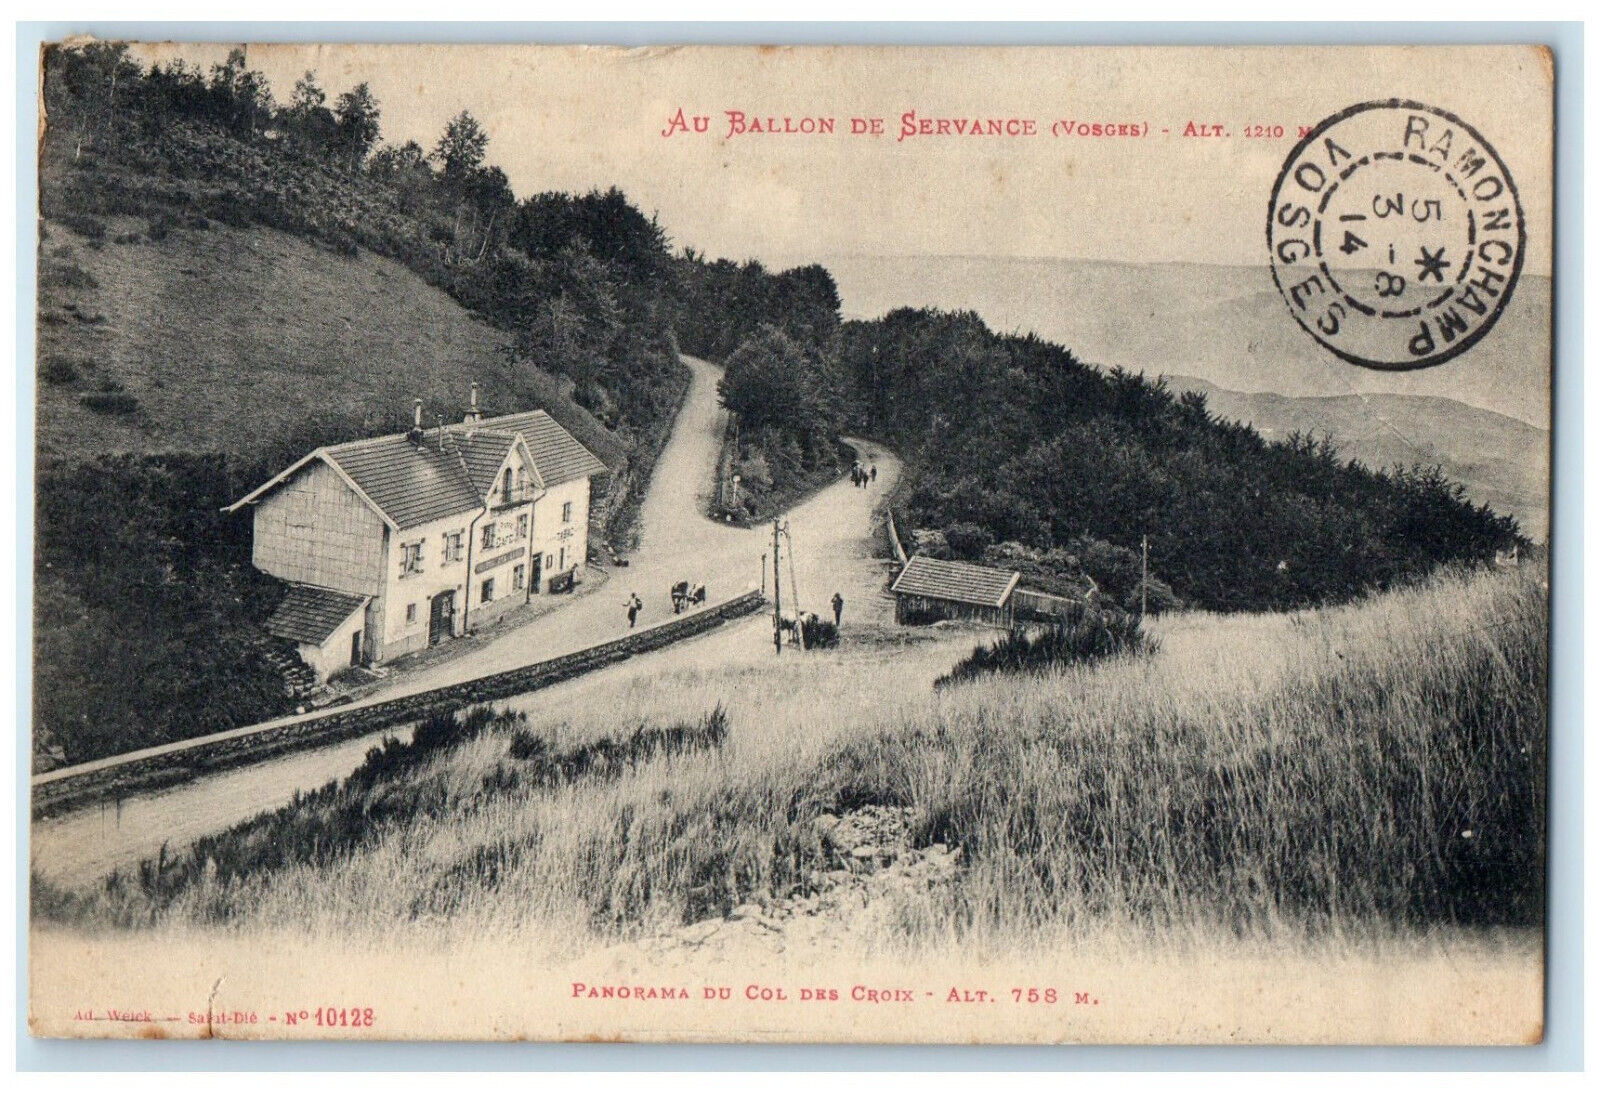 1914 Panorama Of Col des Croix at Ballon De Servance (Vosges) France Postcard